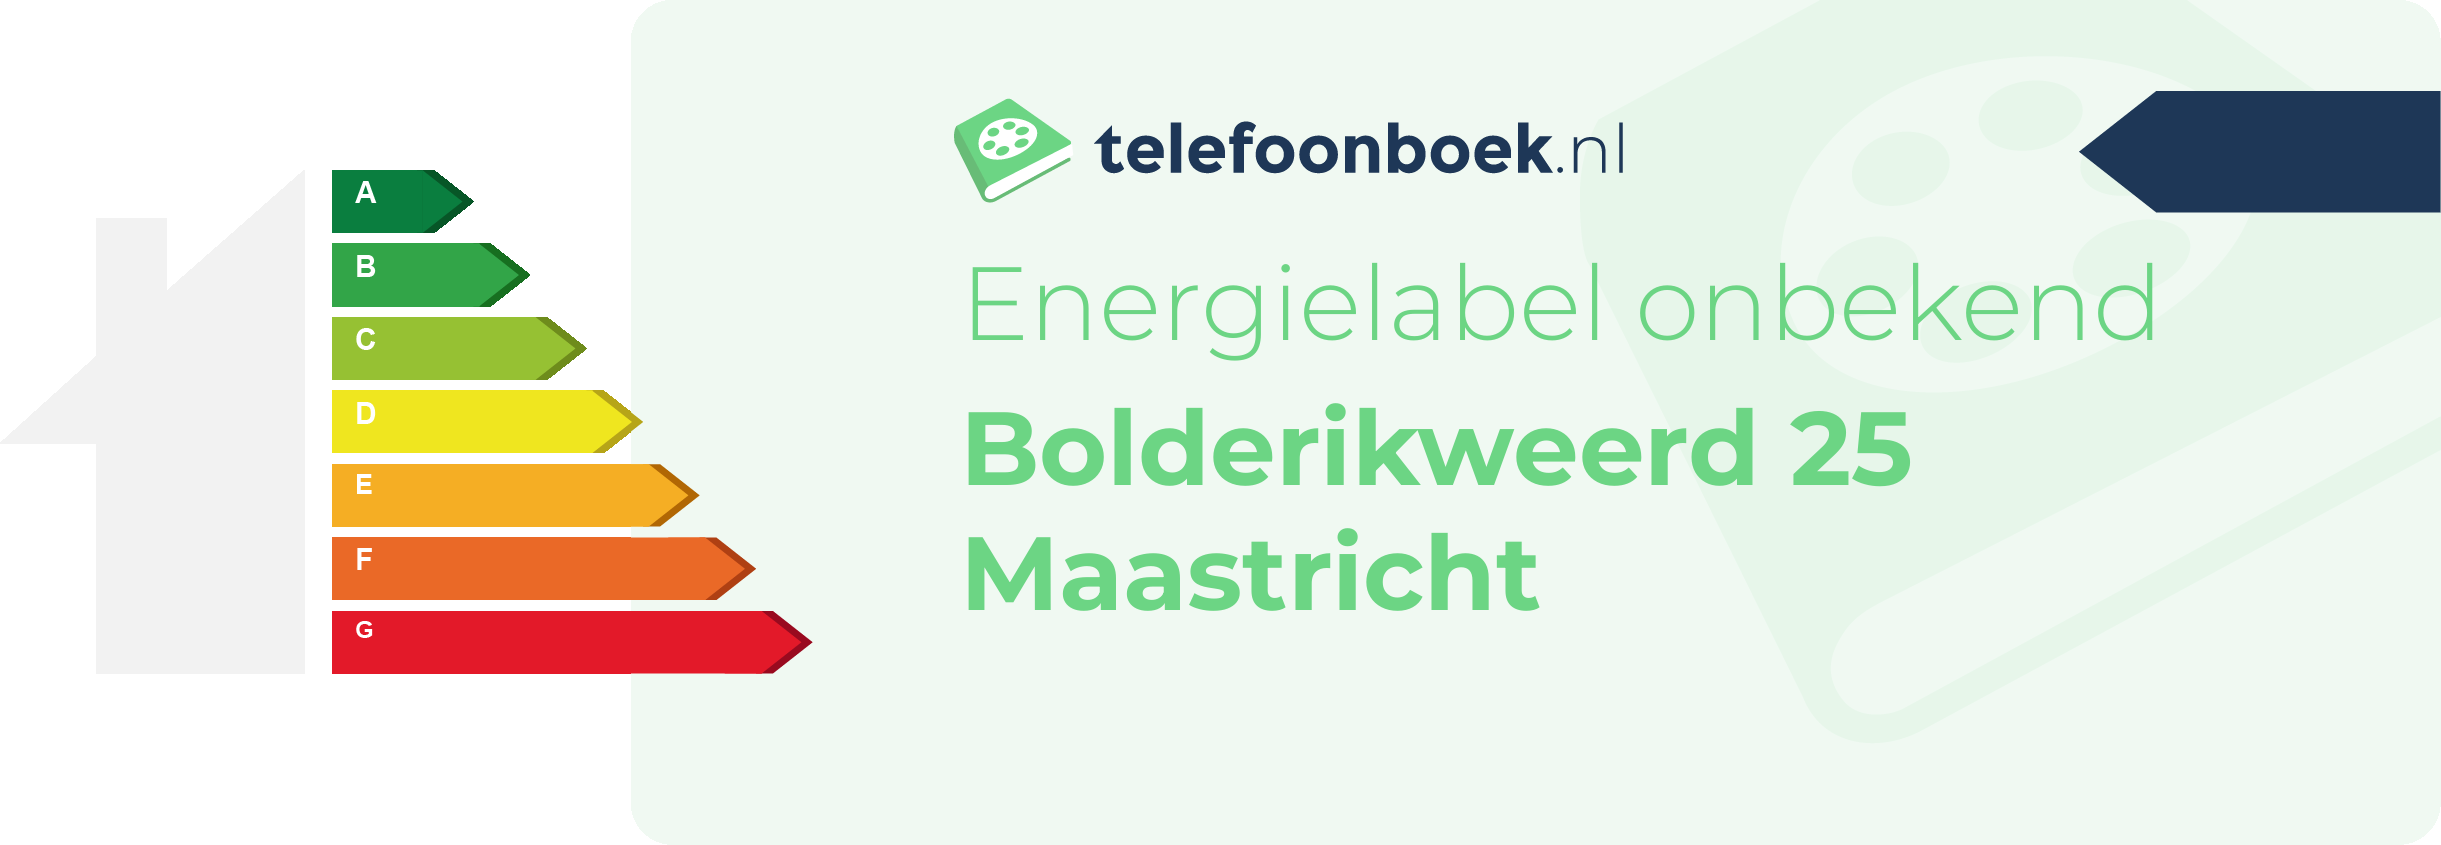 Energielabel Bolderikweerd 25 Maastricht